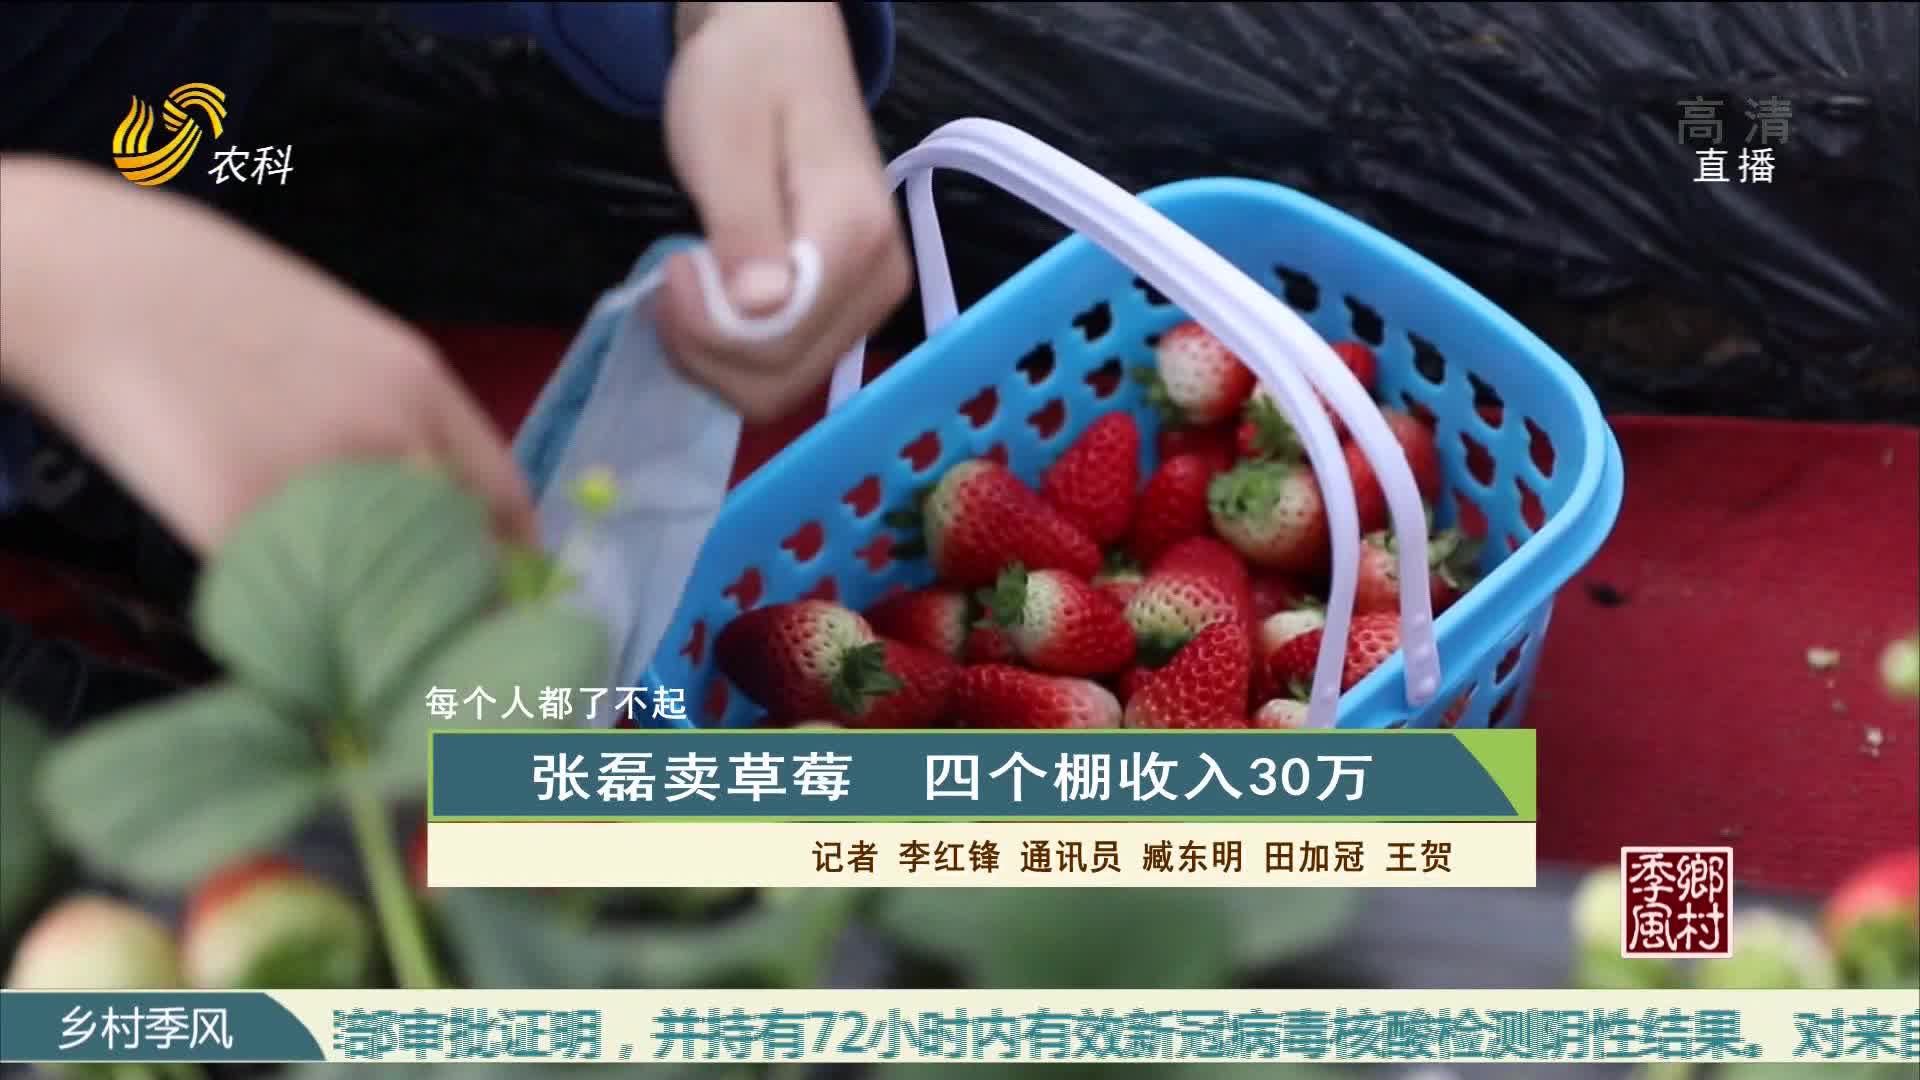 【每个人都了不起】张磊卖草莓 四个棚收入30万